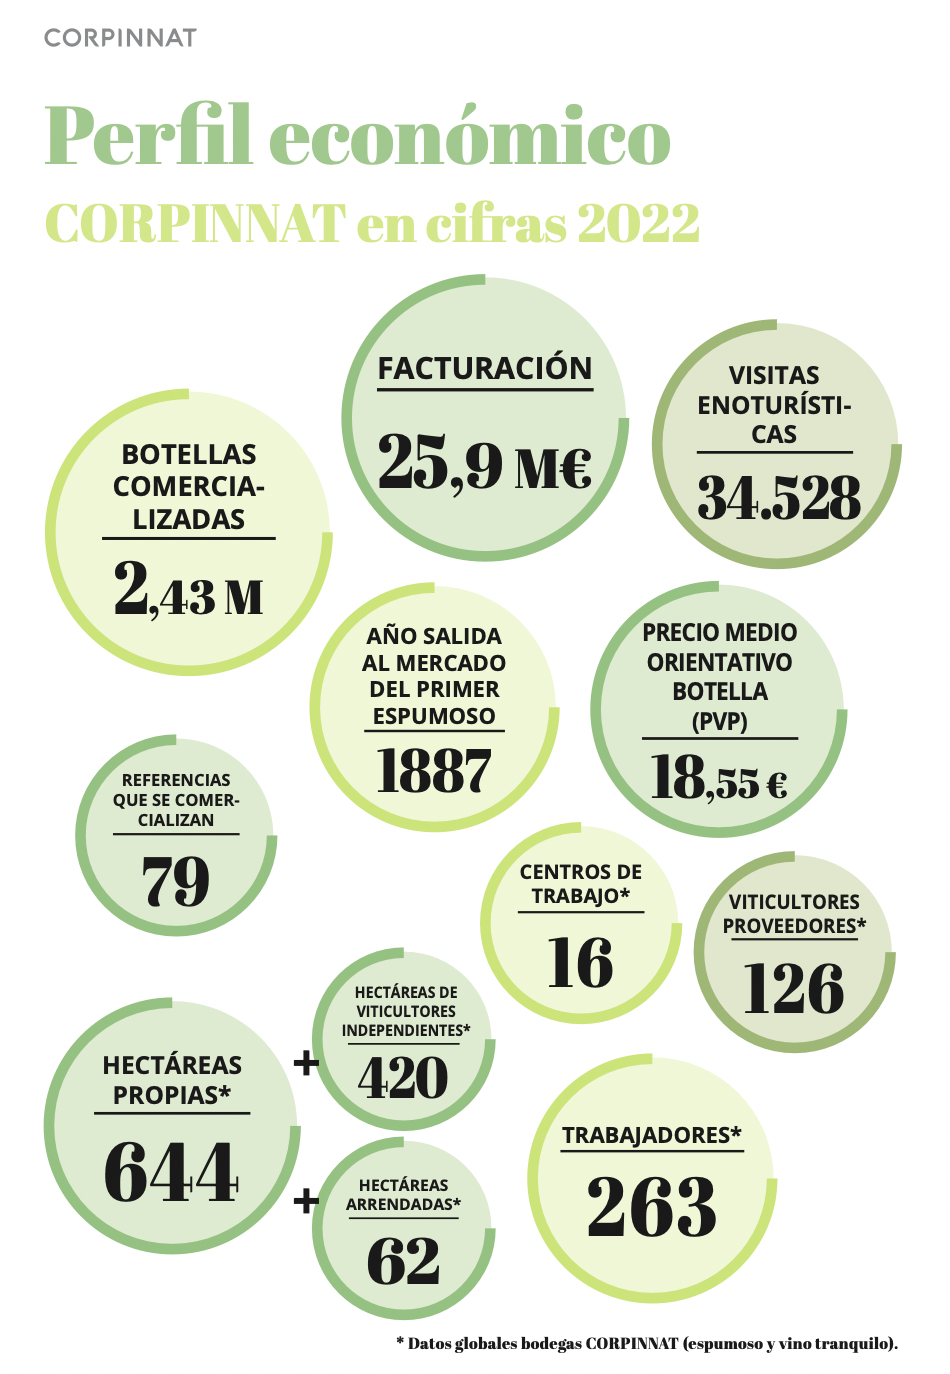 CORPINNAT se consolida en cinco años como una marca de prestigio y referencia internacional de grandes vinos espumosos del Penedès